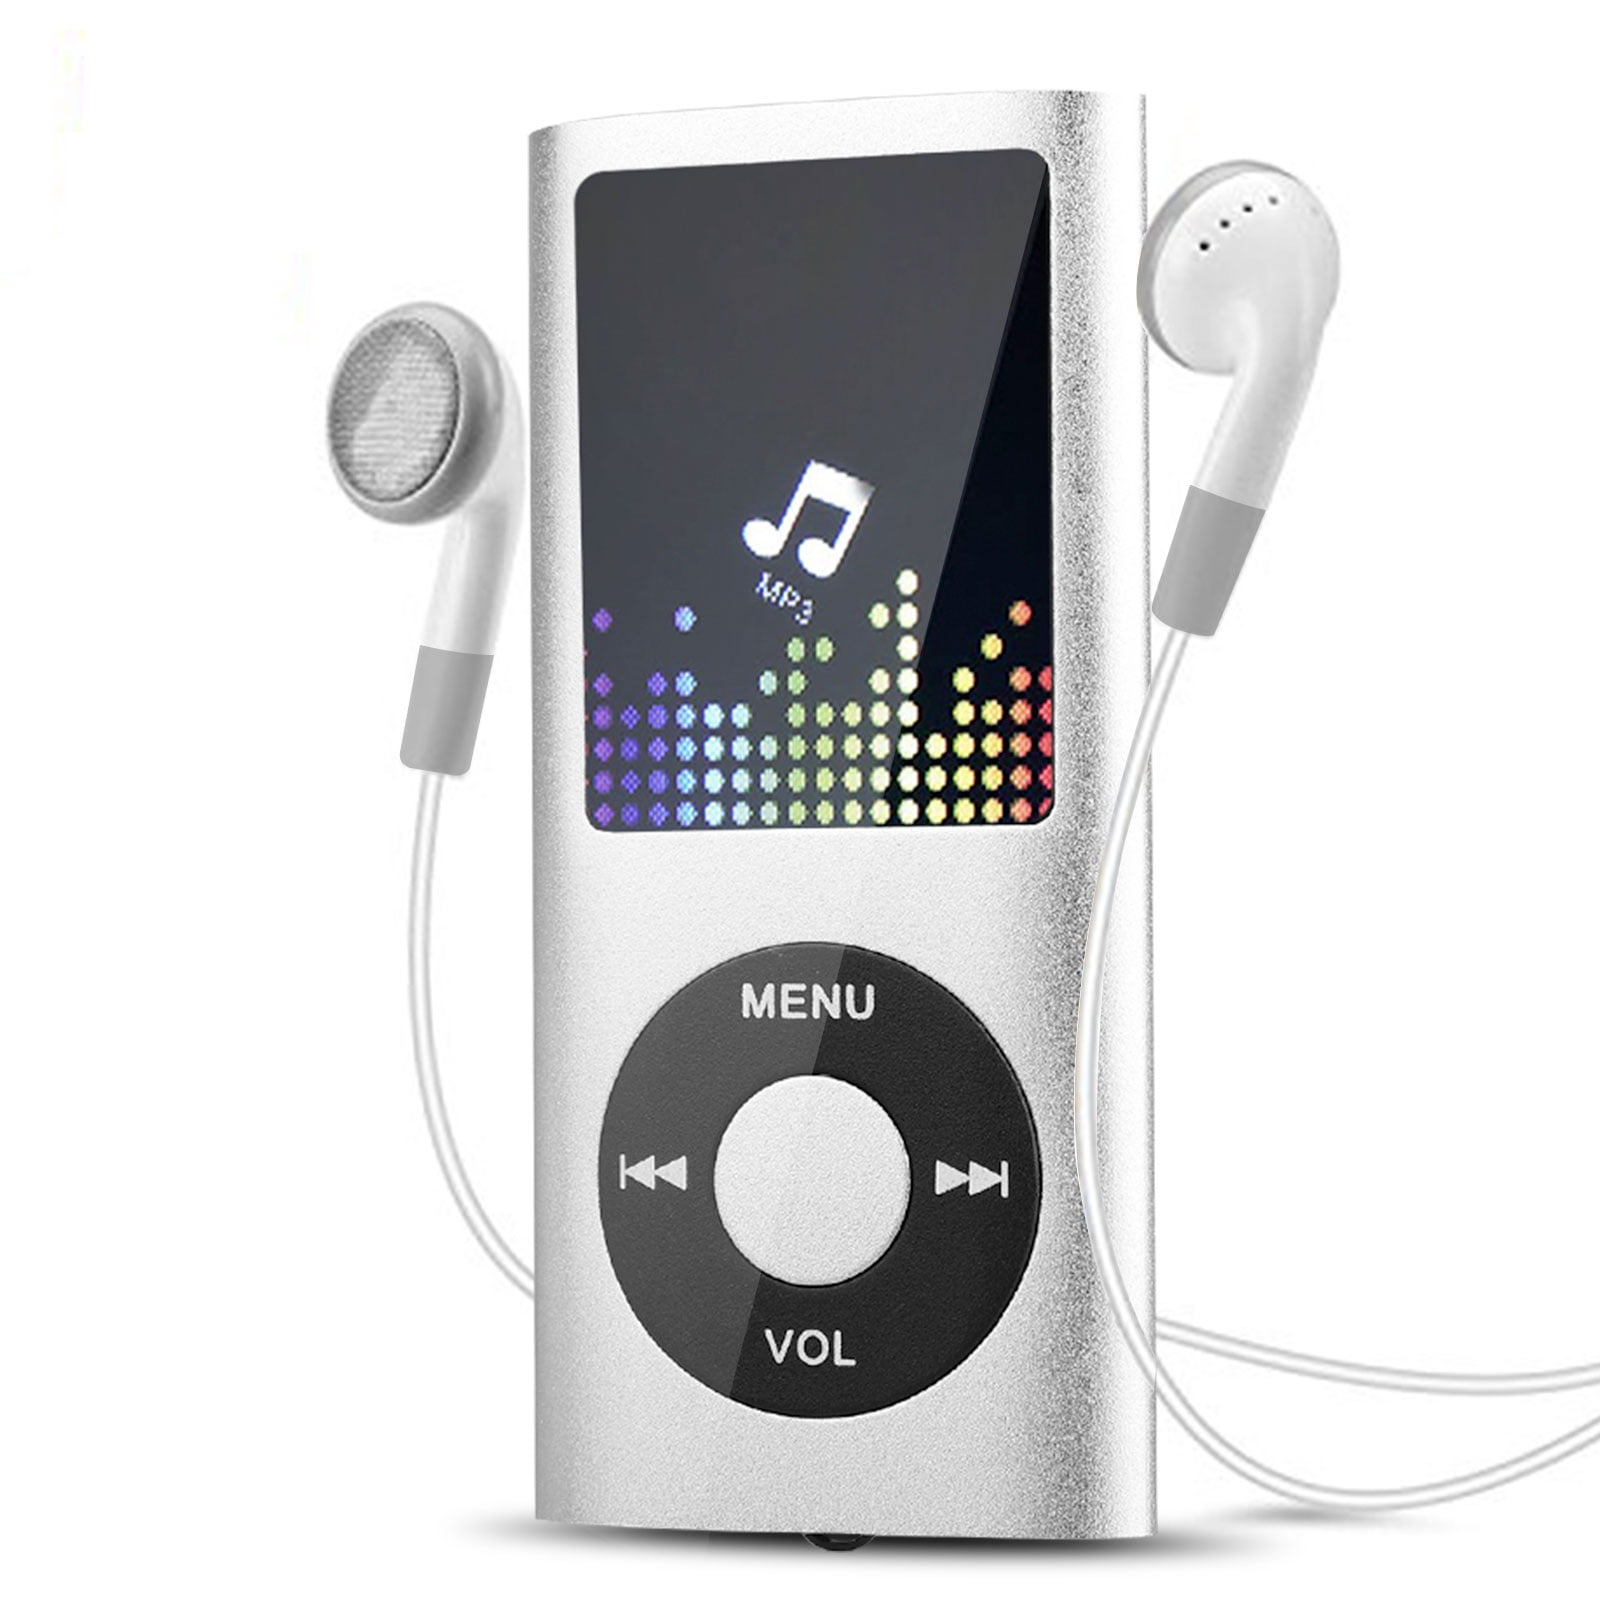 MP3 player SA1MXX04KN/02 | Philips